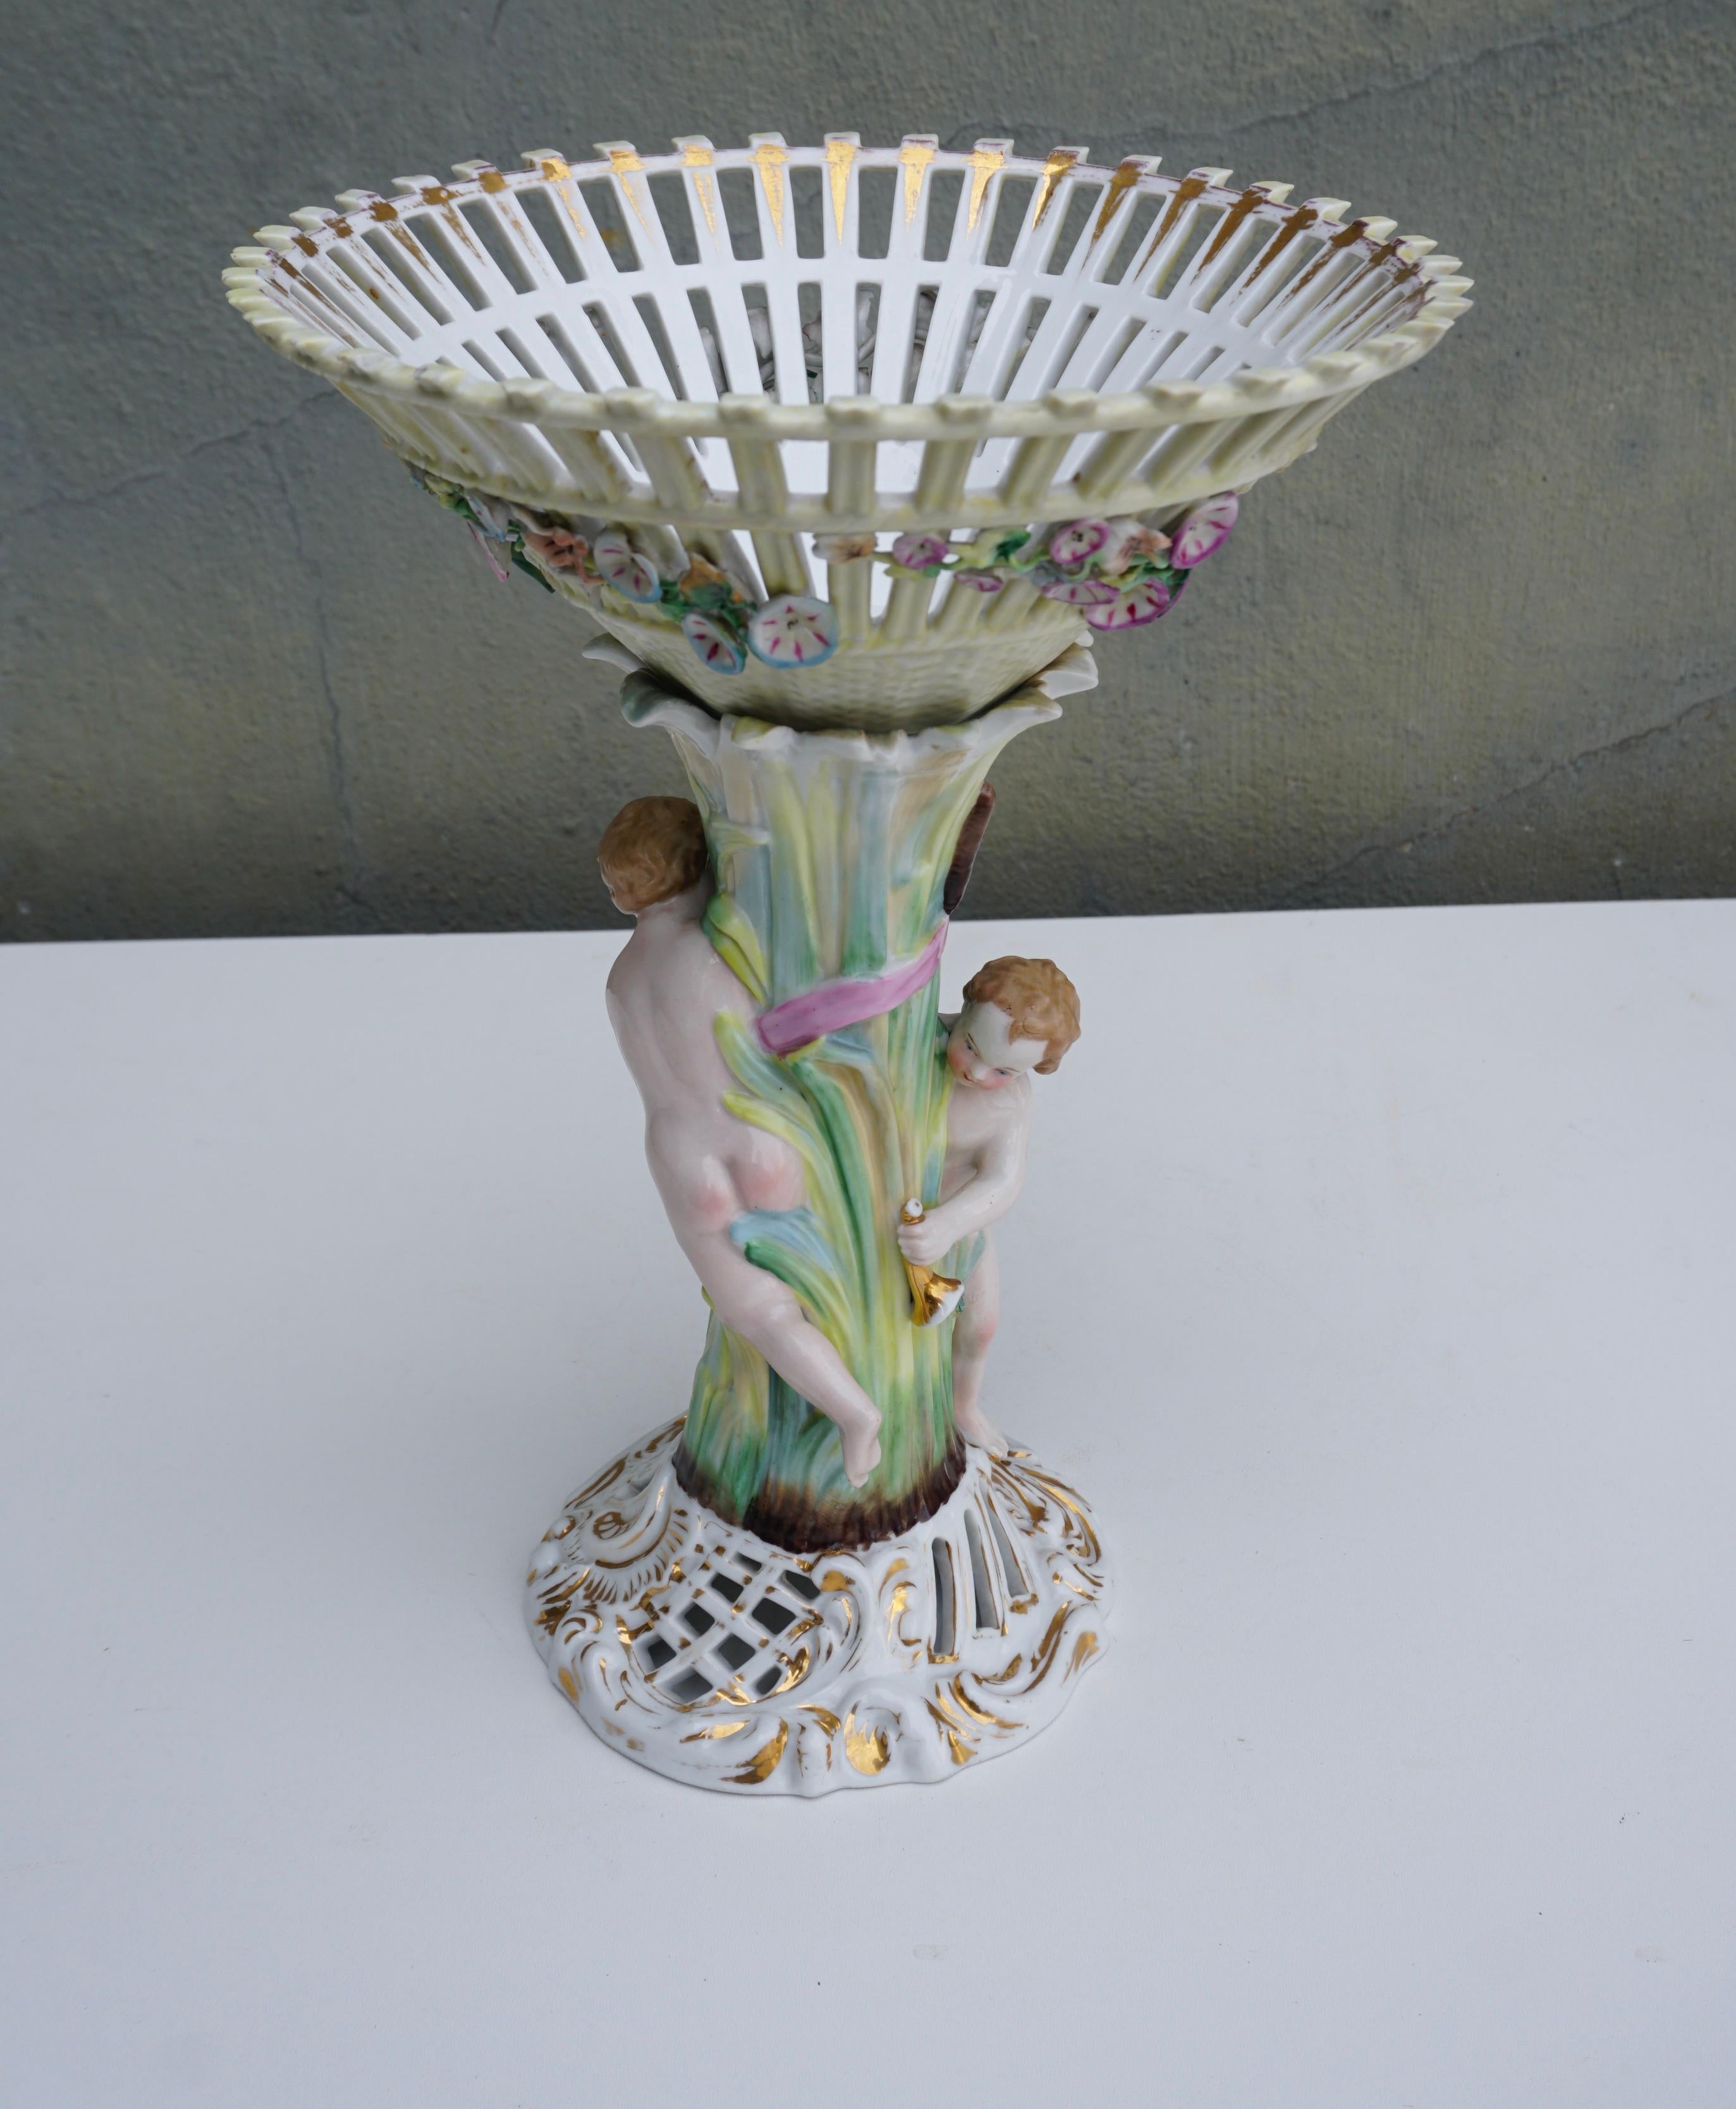 Cet objet est une jardinière en porcelaine du 19e siècle, magnifiquement émaillée de riches couleurs avec des gerbes de fleurs et des reflets dorés. Cette superbe pièce rococo présente également une fleur de rose en relief, des feuilles et des